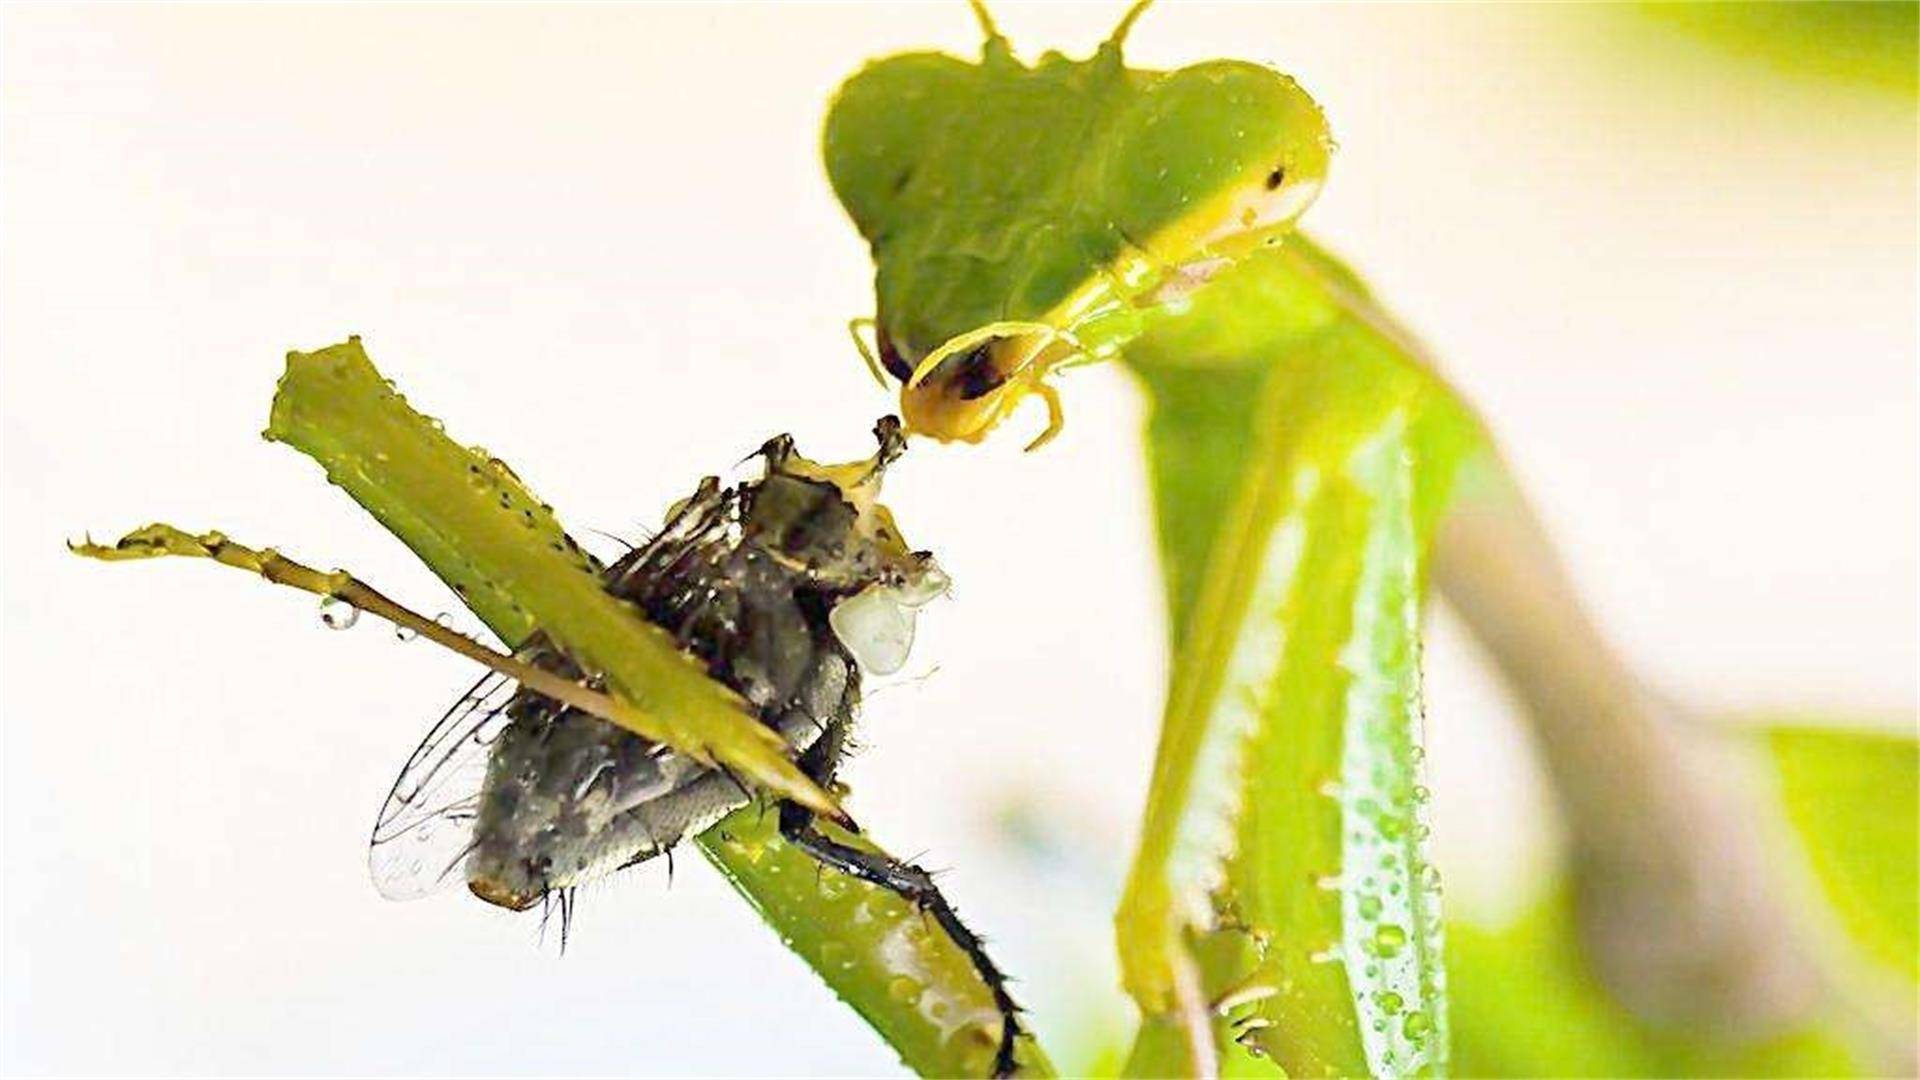 螳螂的咬合力也是不容小觑的,螳螂的口器和上颚十分发达,能够爆发出